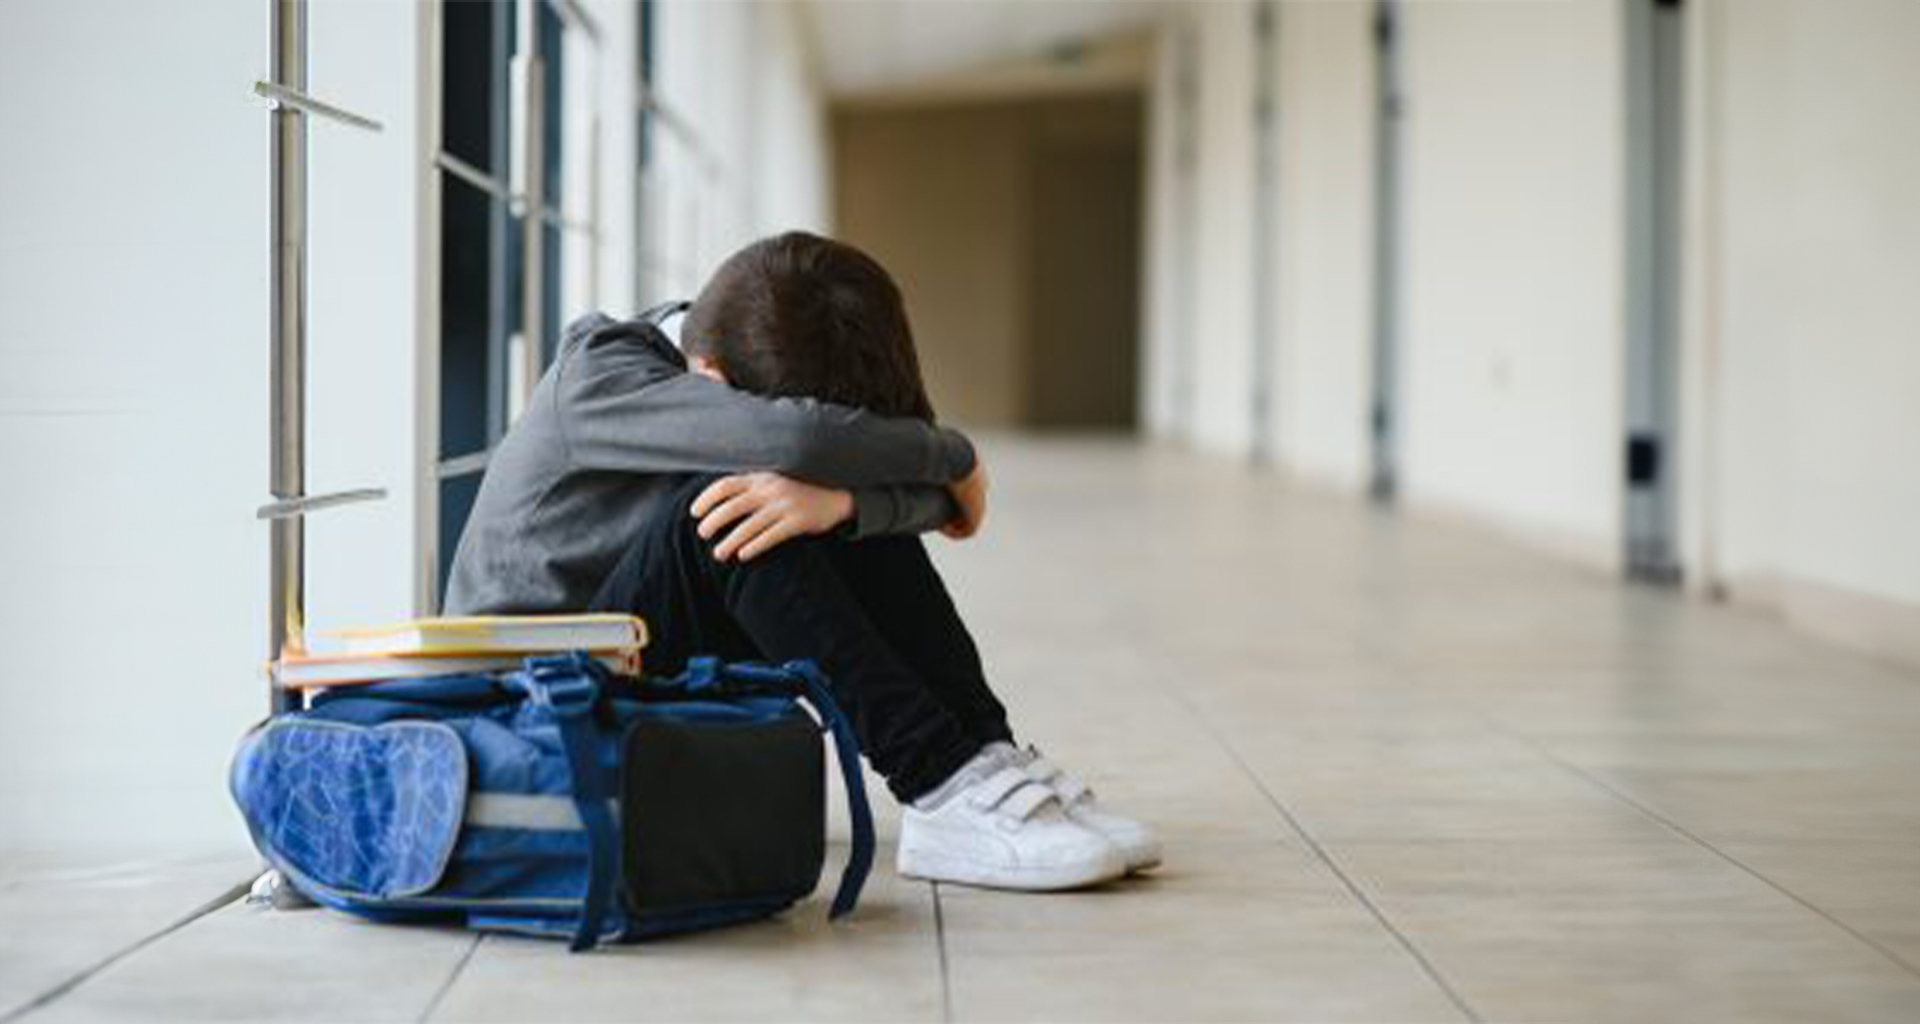 Σεξουαλική κακοποίηση μαθητή, θύμα και θύτης στο ίδιο σχολεία